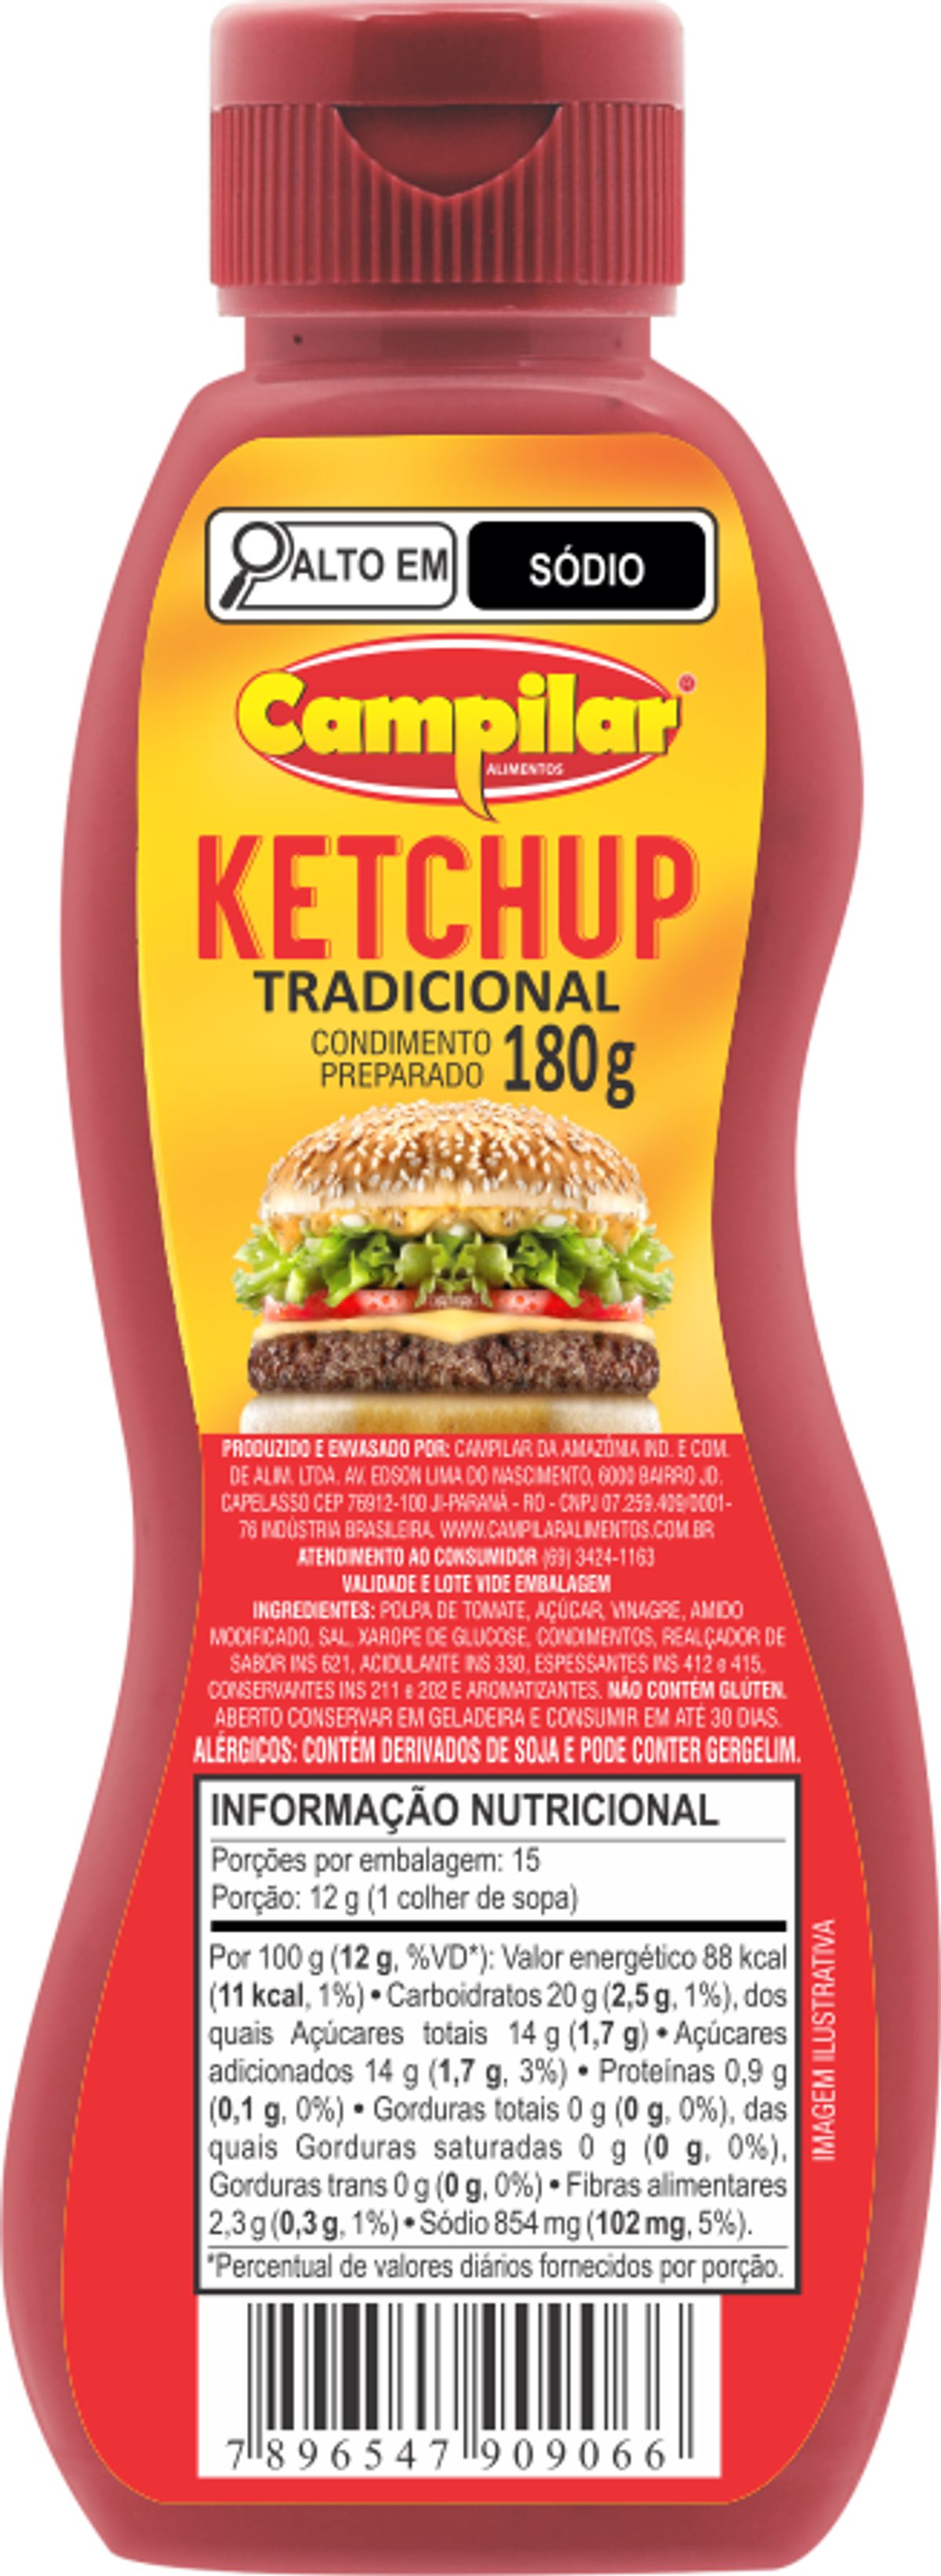 Ketchup Campilar Tradicional 180g